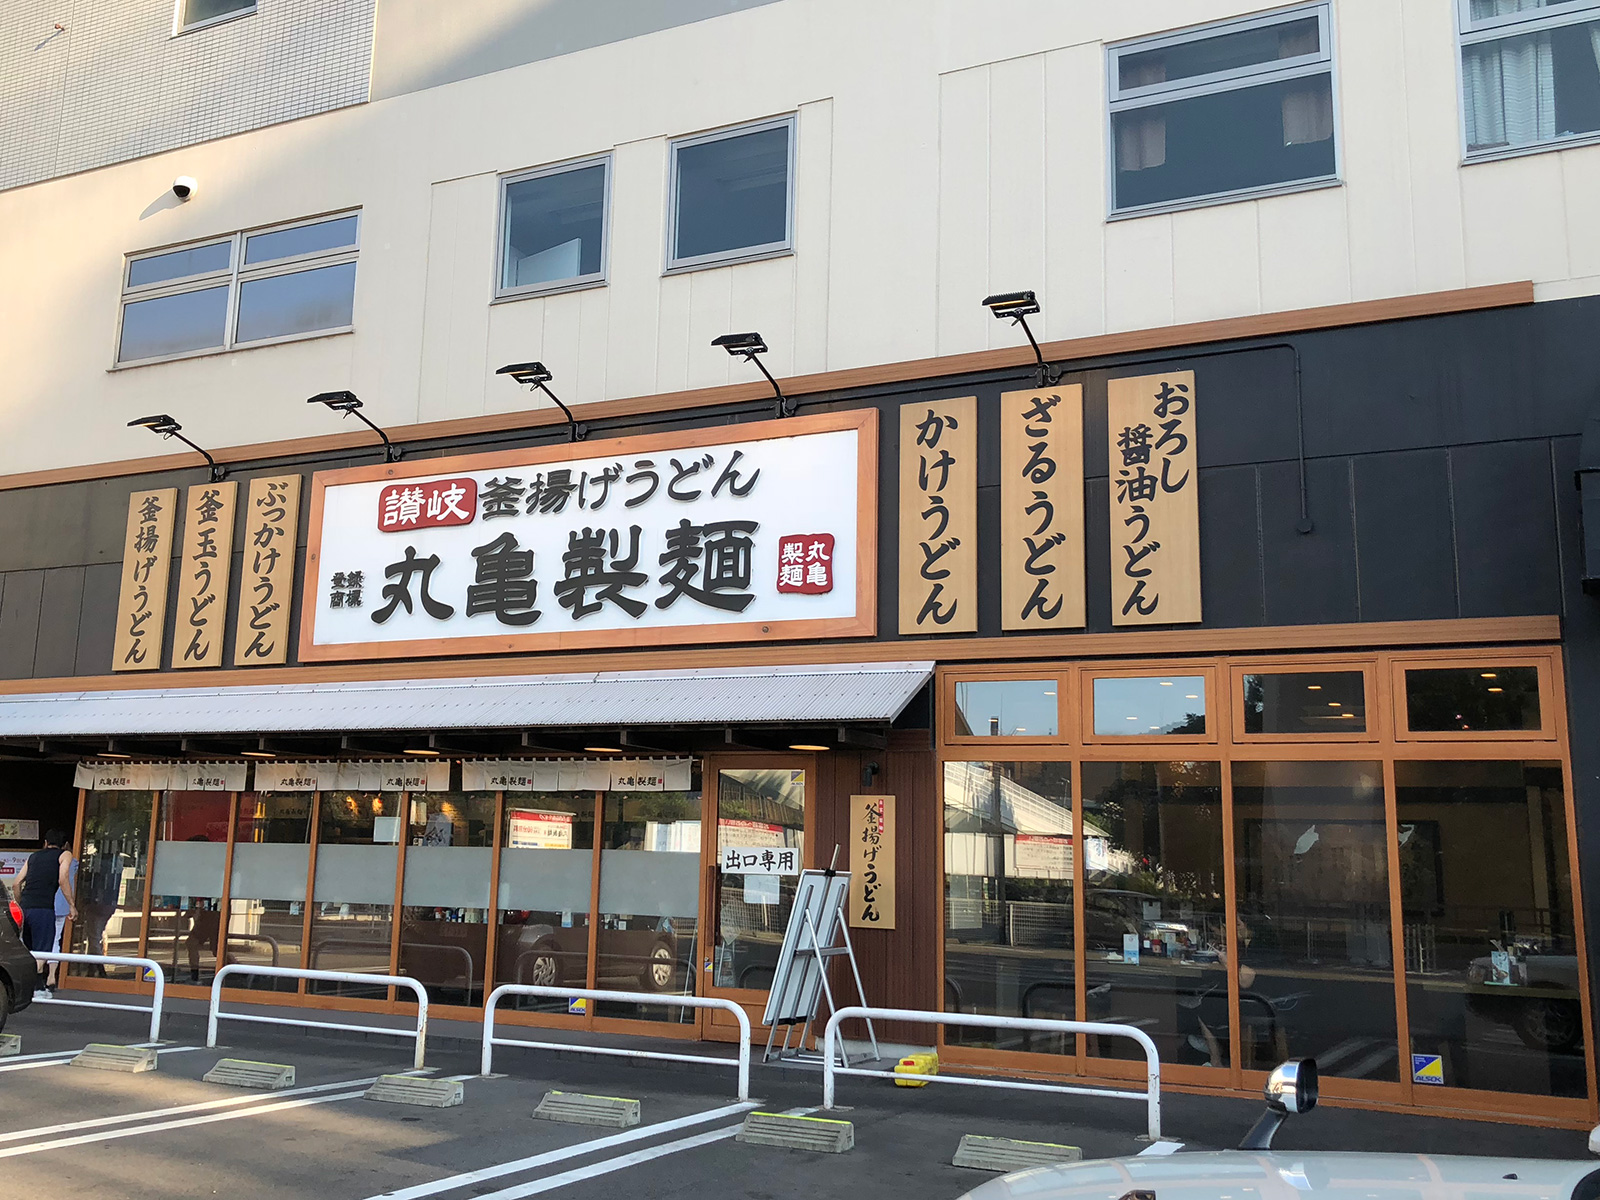 「丸亀製麺 名古屋丸の内店」のすだちおろし冷やかけうどんと鶏天 @丸の内